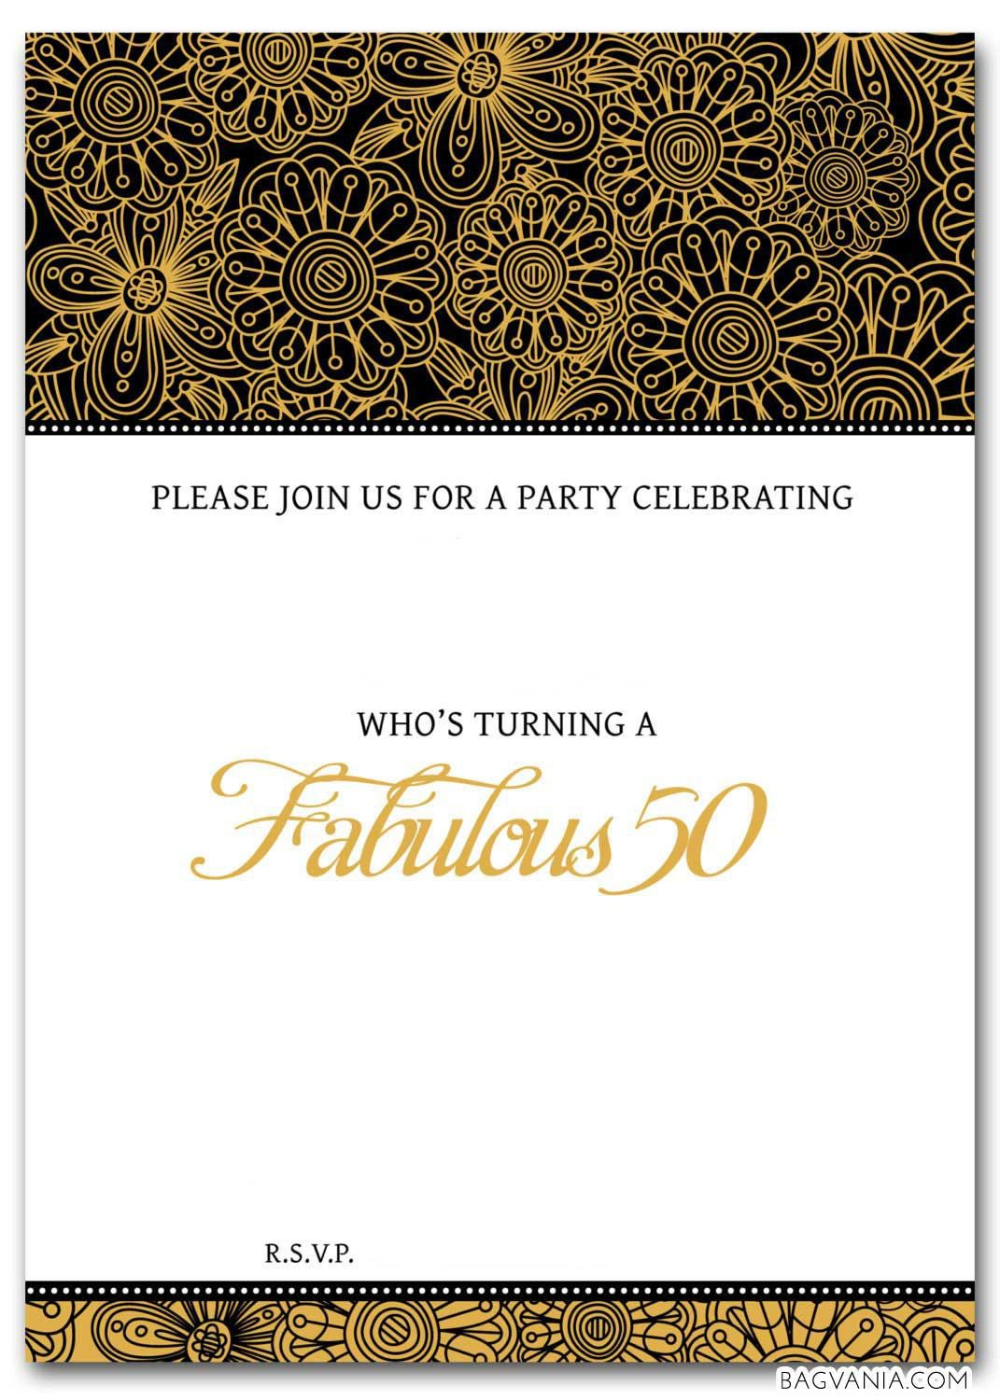 Einladungskarten Einladung Zum 50 Geburtstag Vorlagen Einladung Insparadies Einladung Insparadies